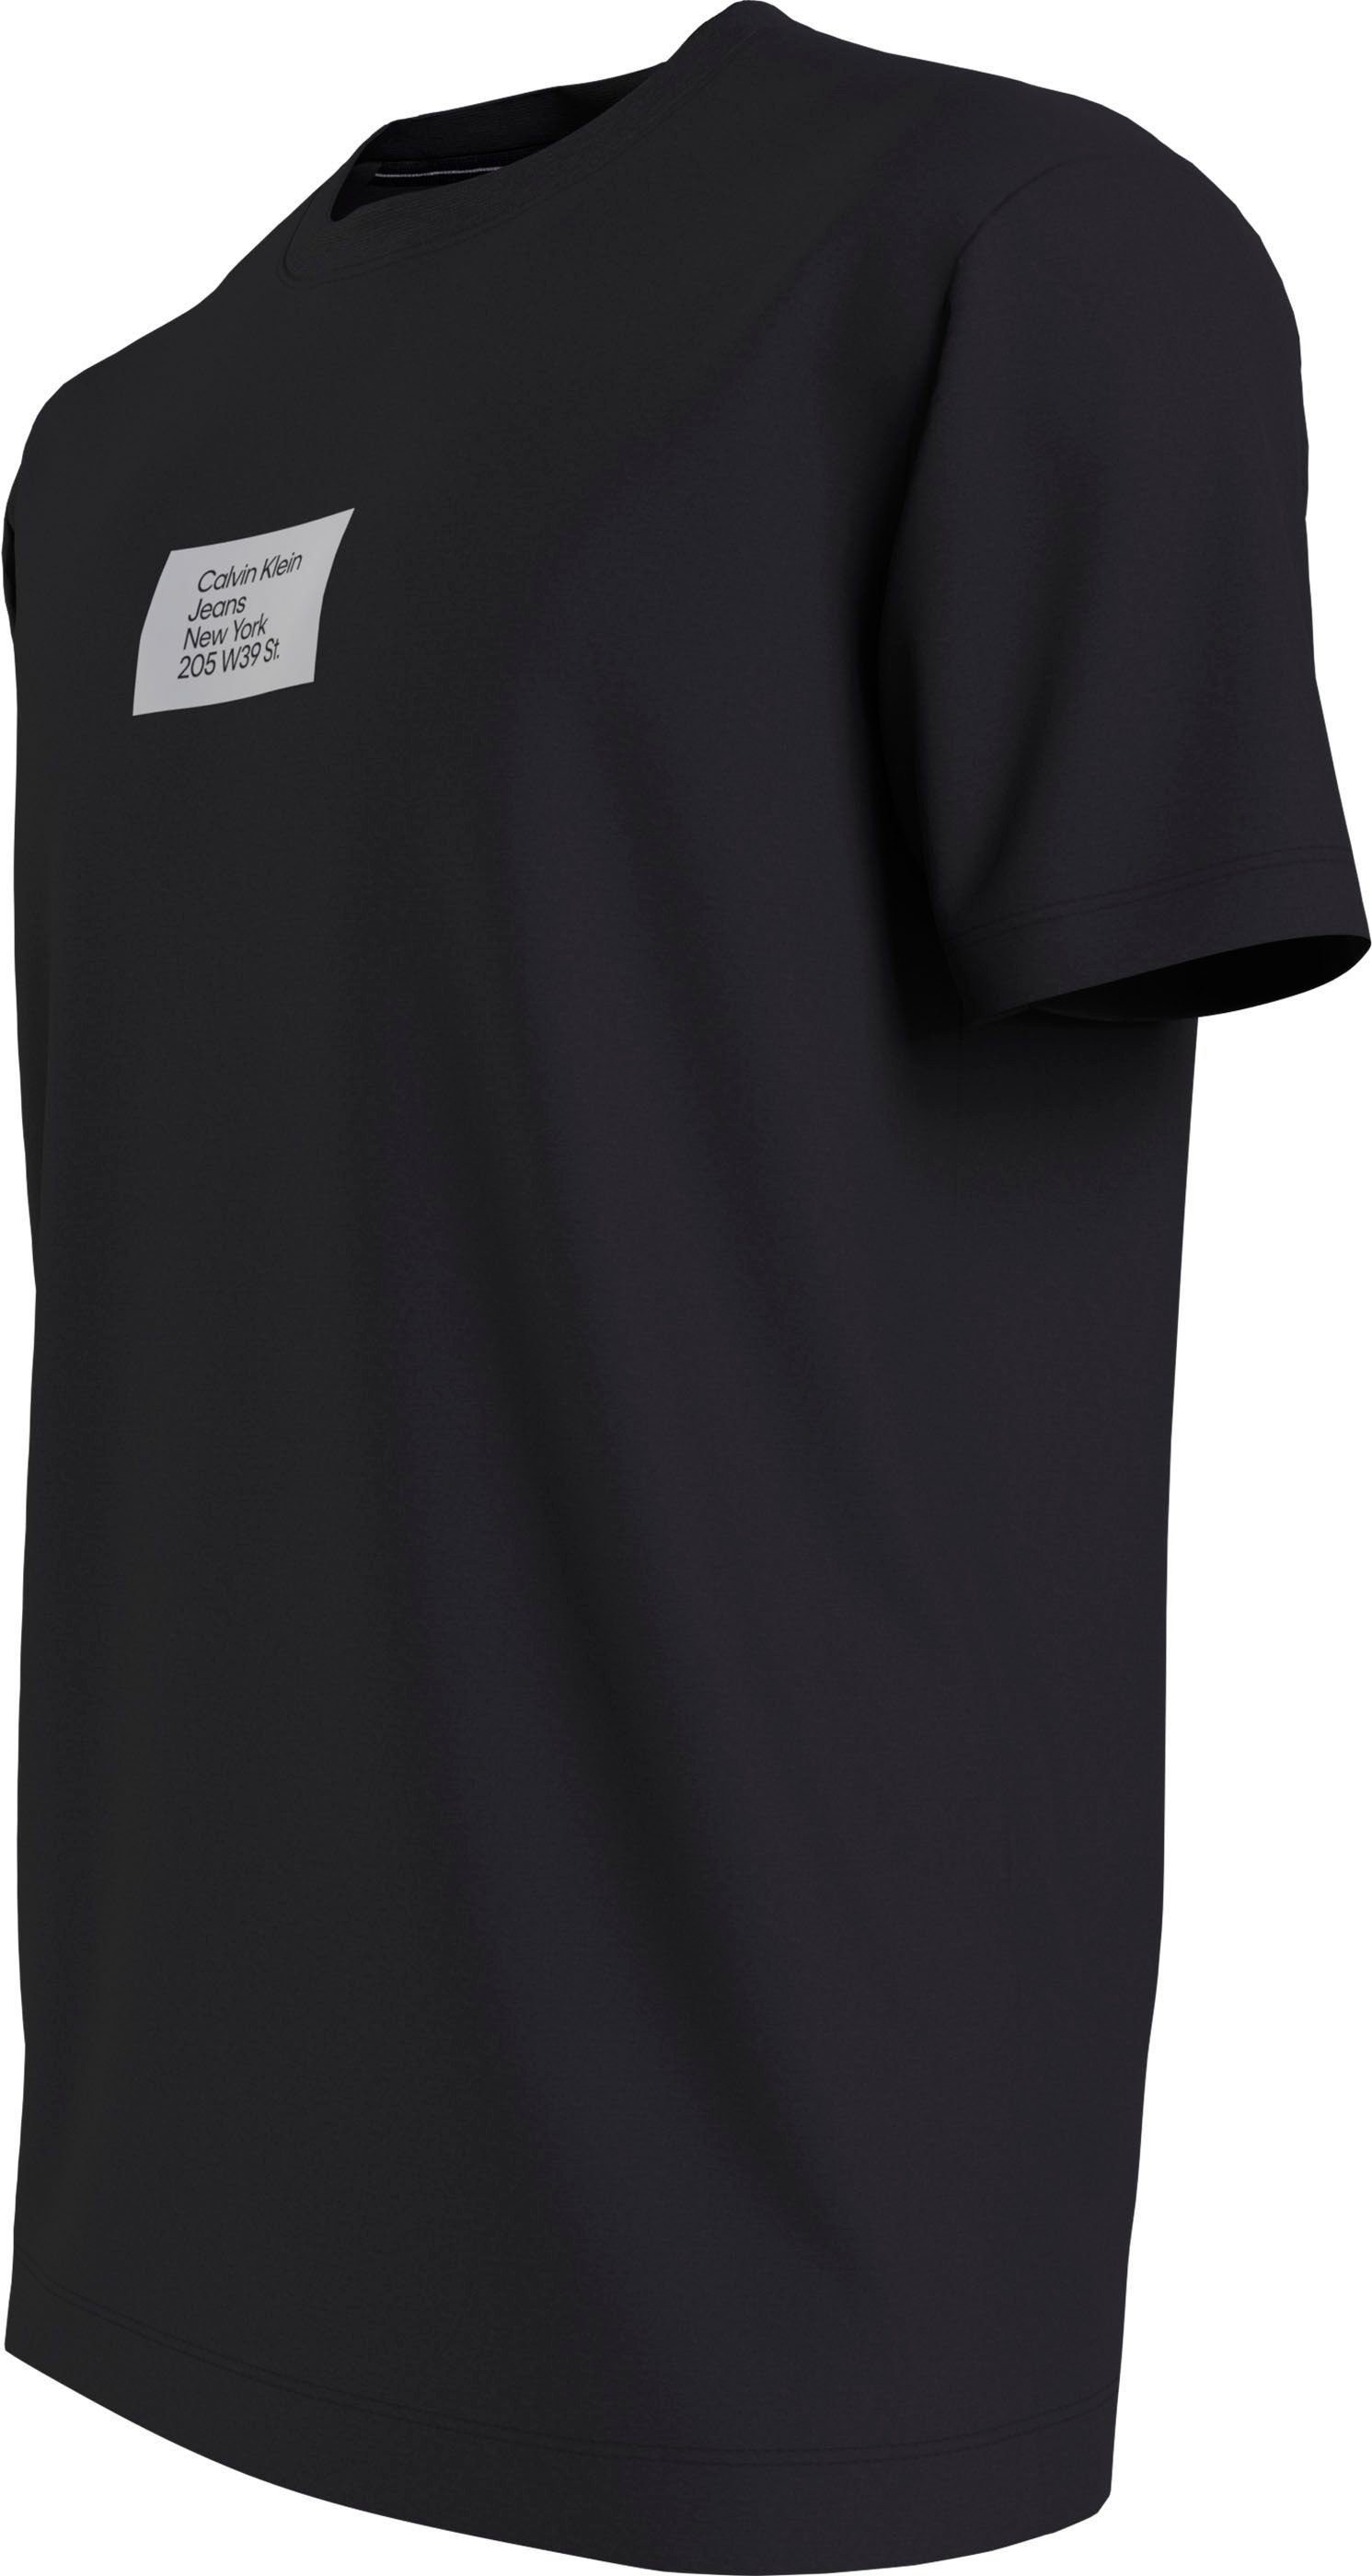 Calvin Klein mit Rundhalsauschnitt schwarz Plus T-Shirt Jeans